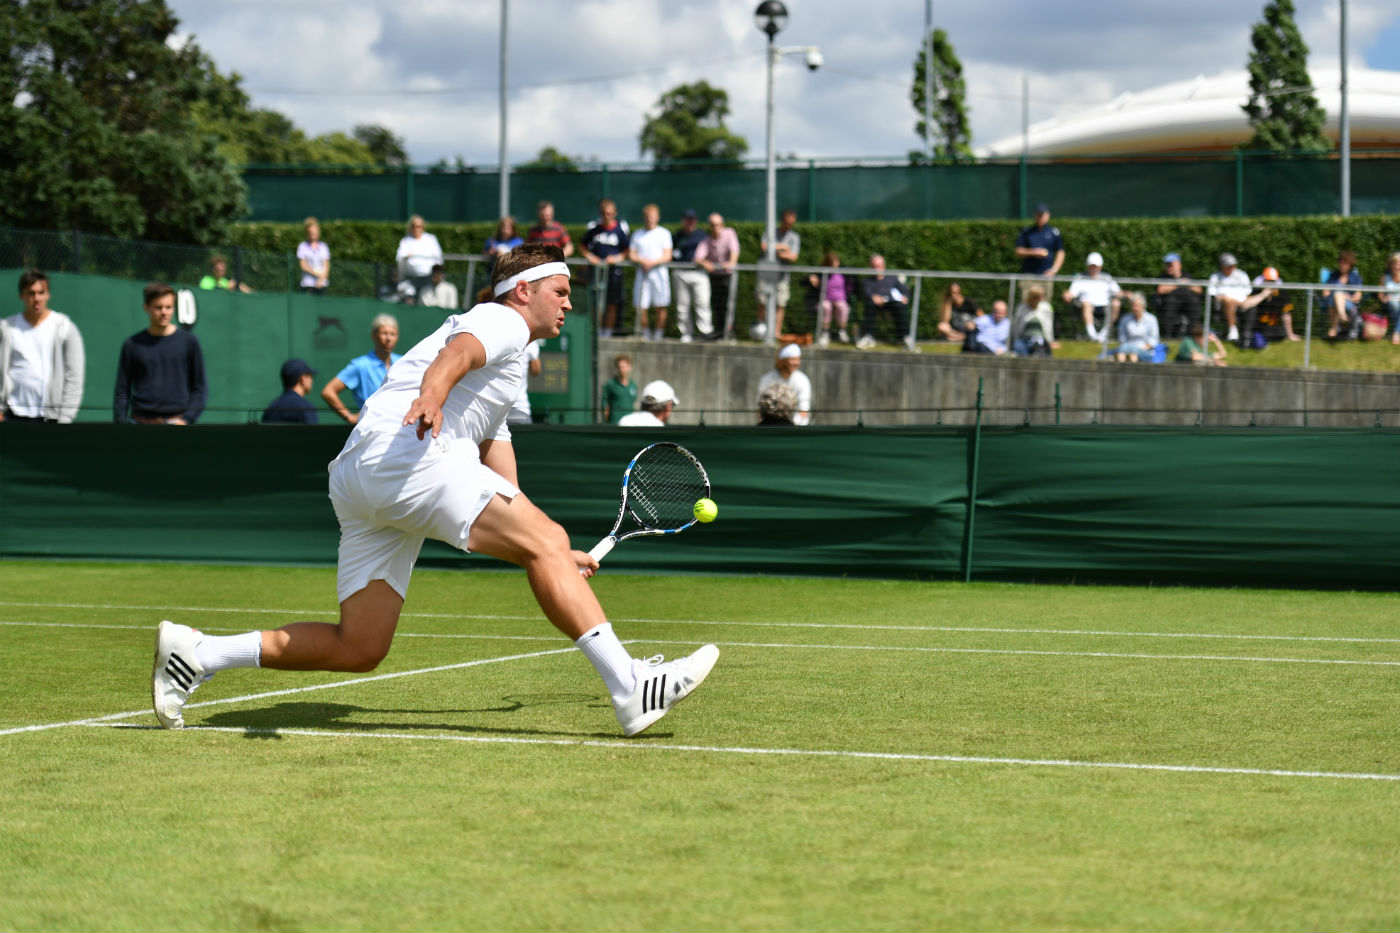 Willis partecipò alle qualificazioni per Wimbledon anche nel 2009, ma venne eliminato al secondo turno.